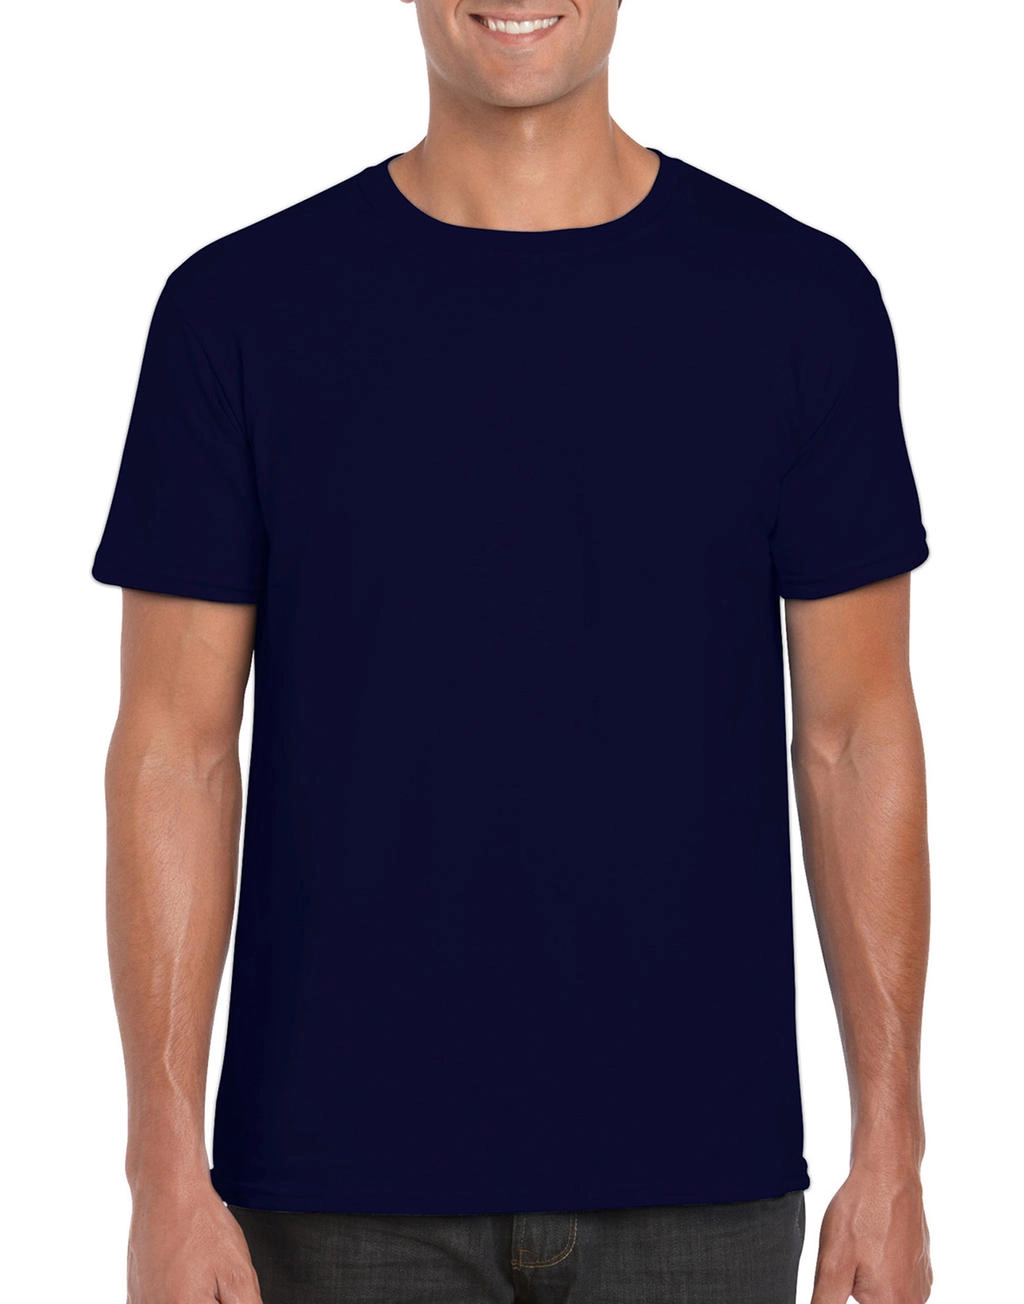 Softstyle® Ring Spun T-Shirt zum Besticken und Bedrucken in der Farbe Navy mit Ihren Logo, Schriftzug oder Motiv.